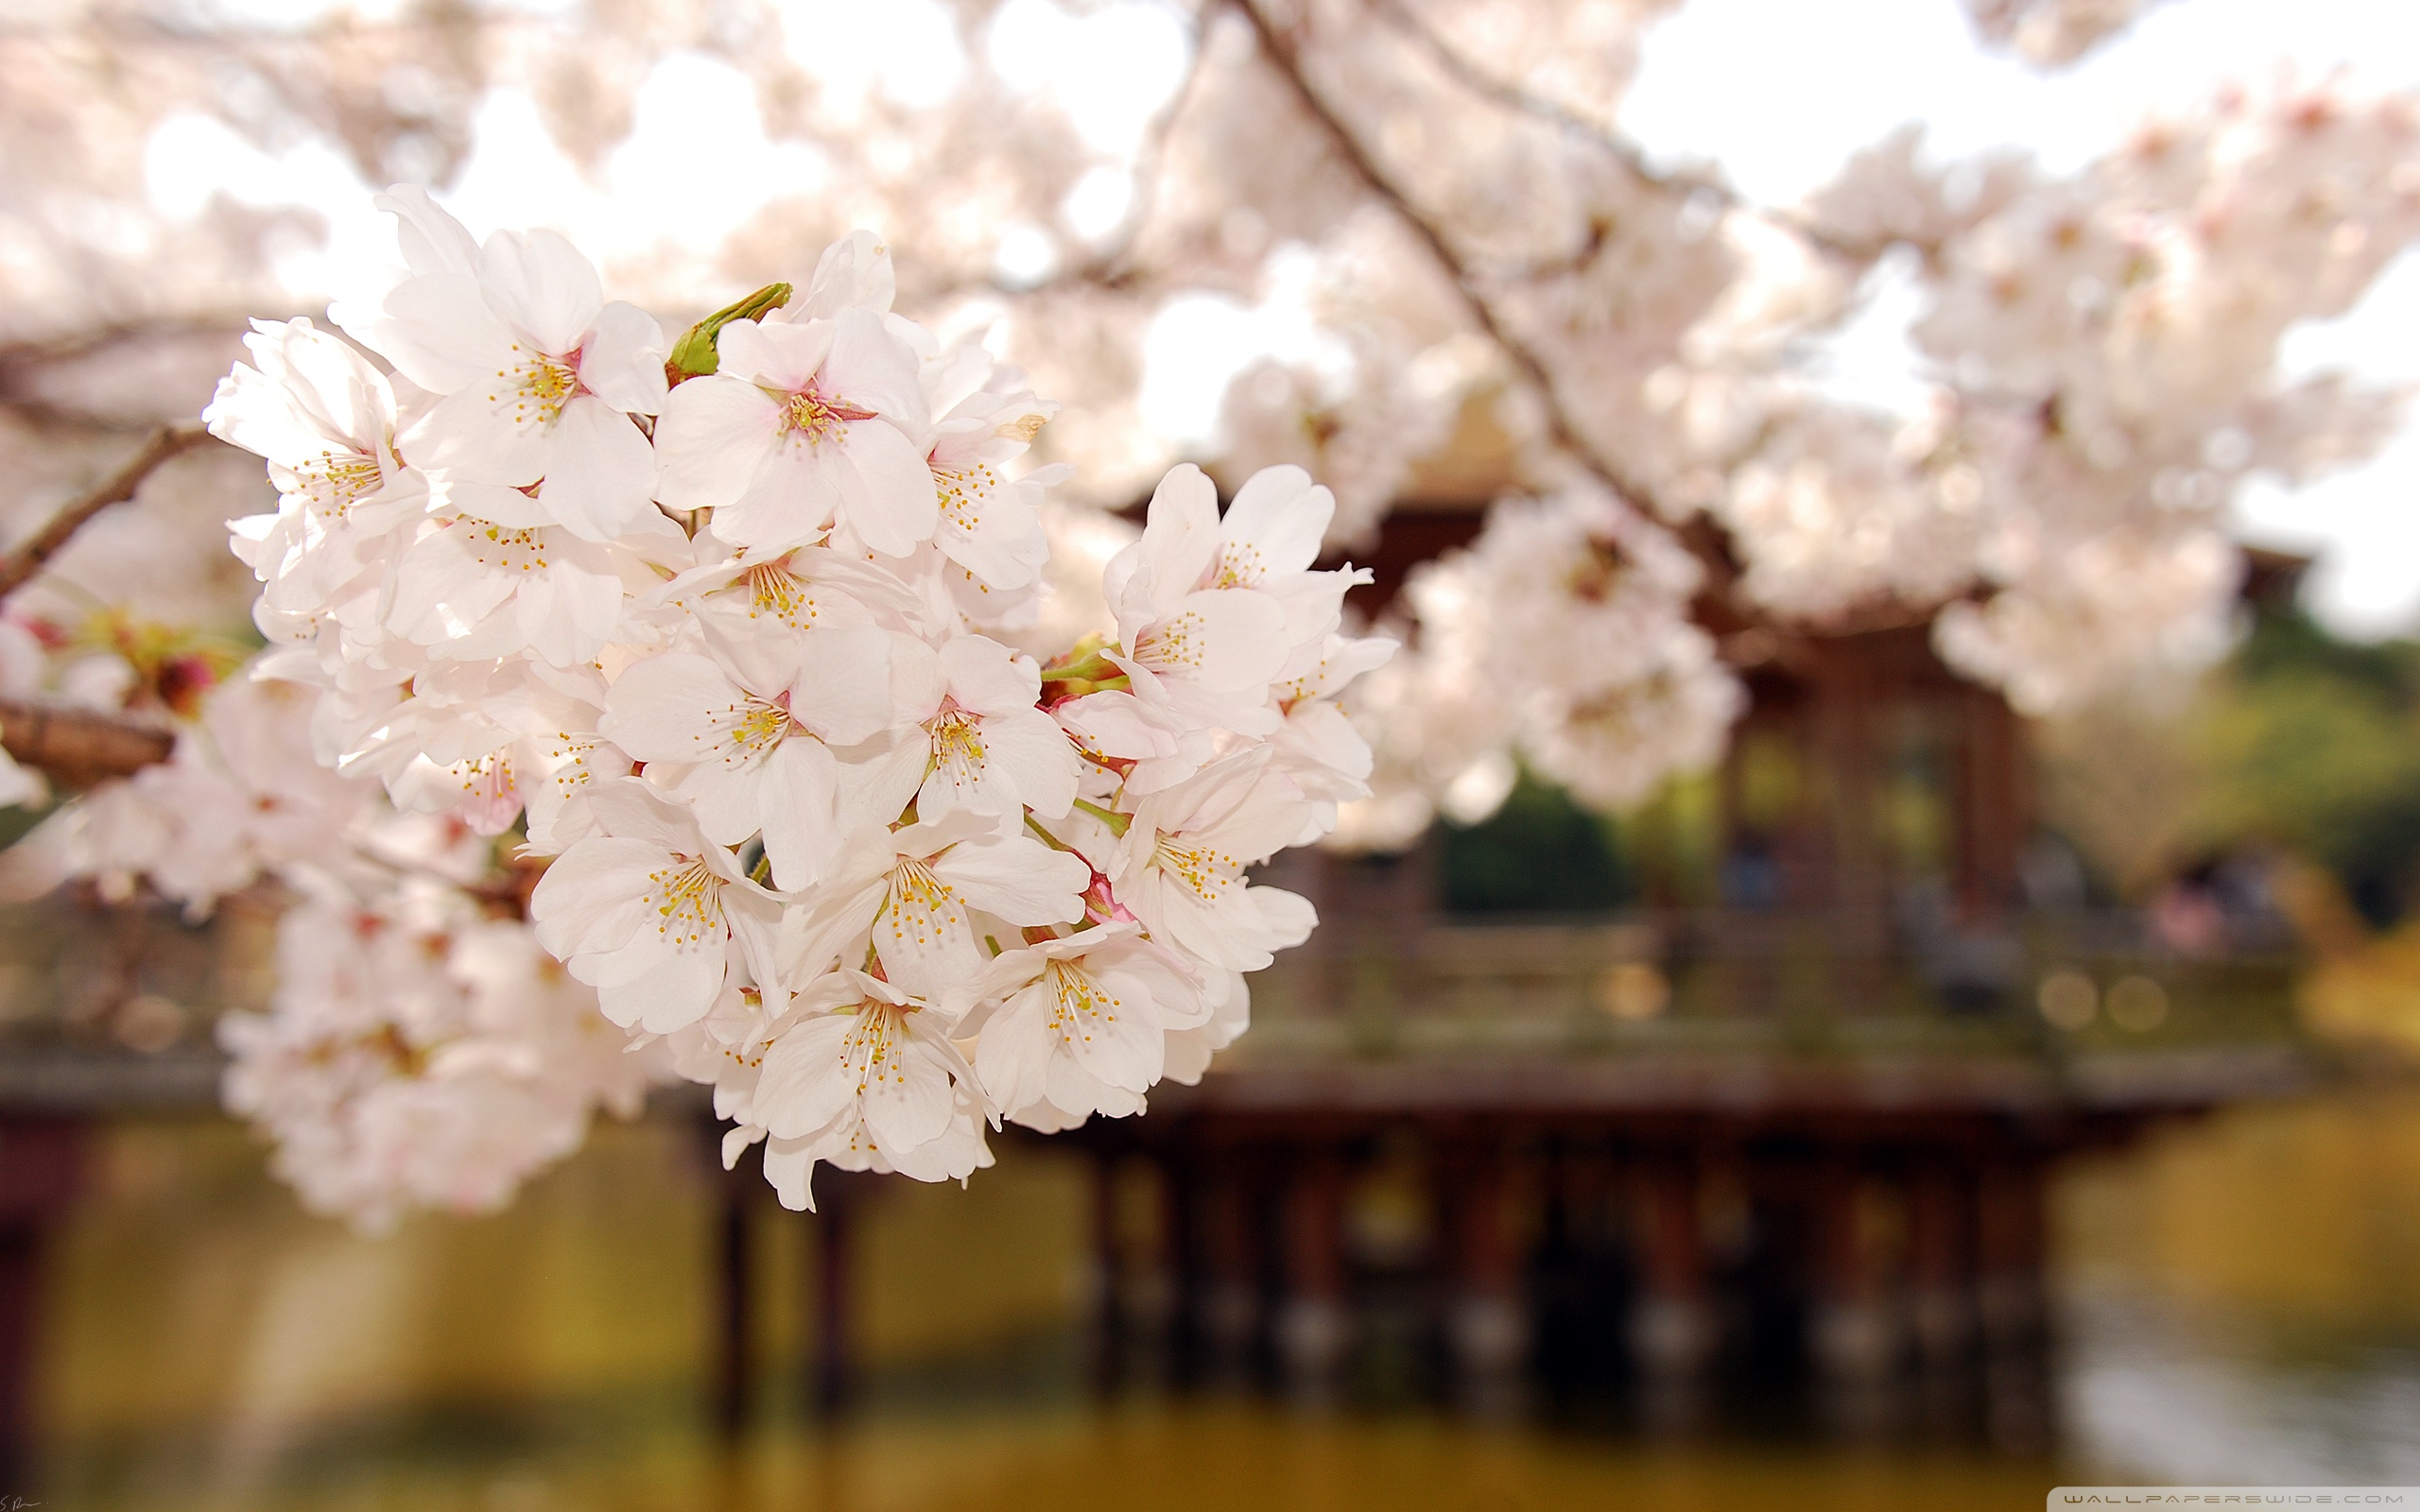 cherry blossom desktop wallpaper - images - tbwnz.com